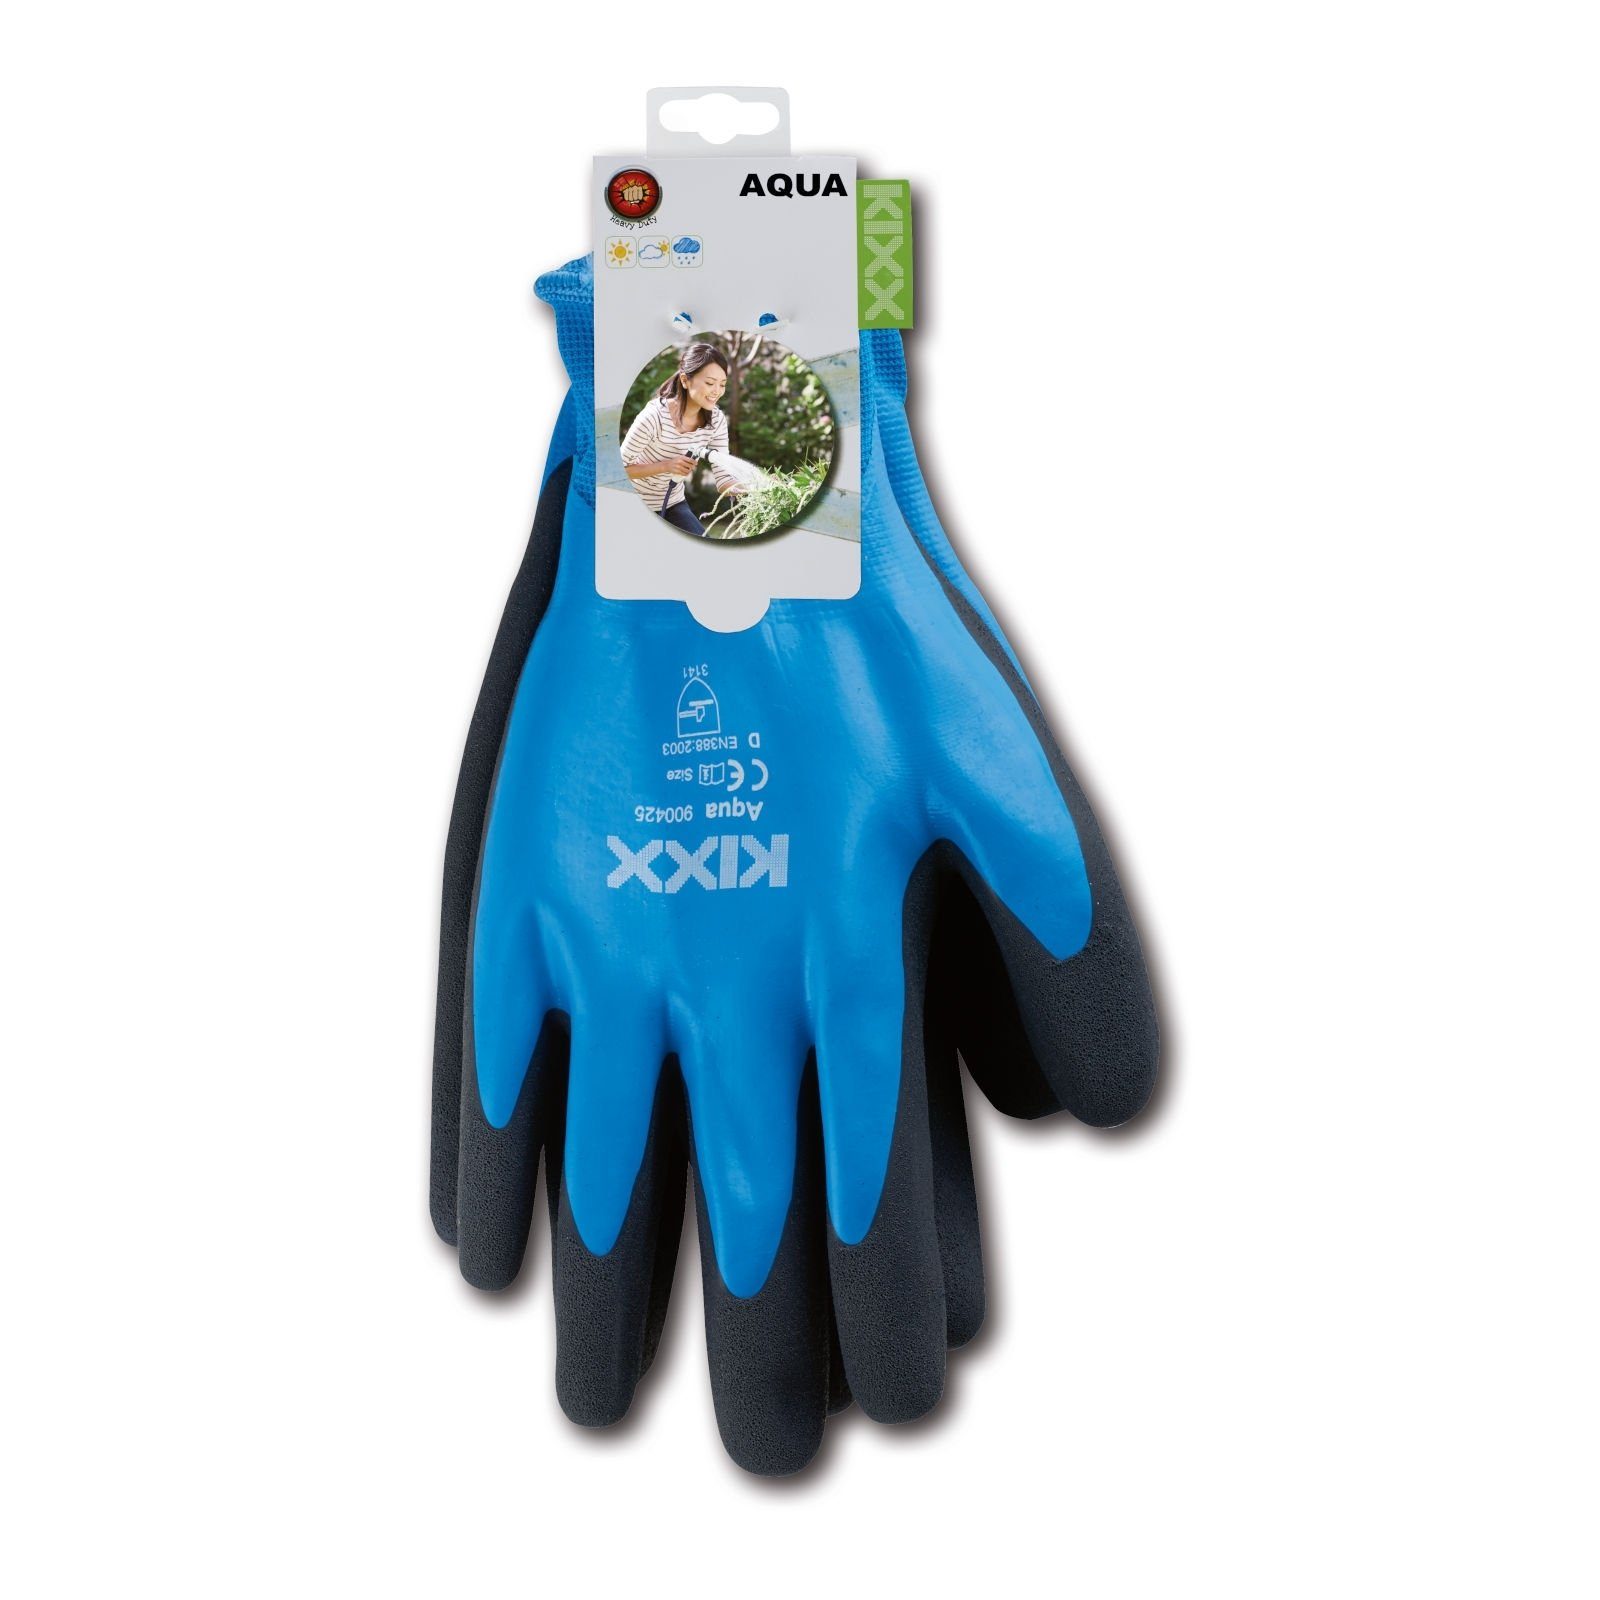 Aqua Gartenarbeit Handschuhe Gartenhandschuhe für die KIXX